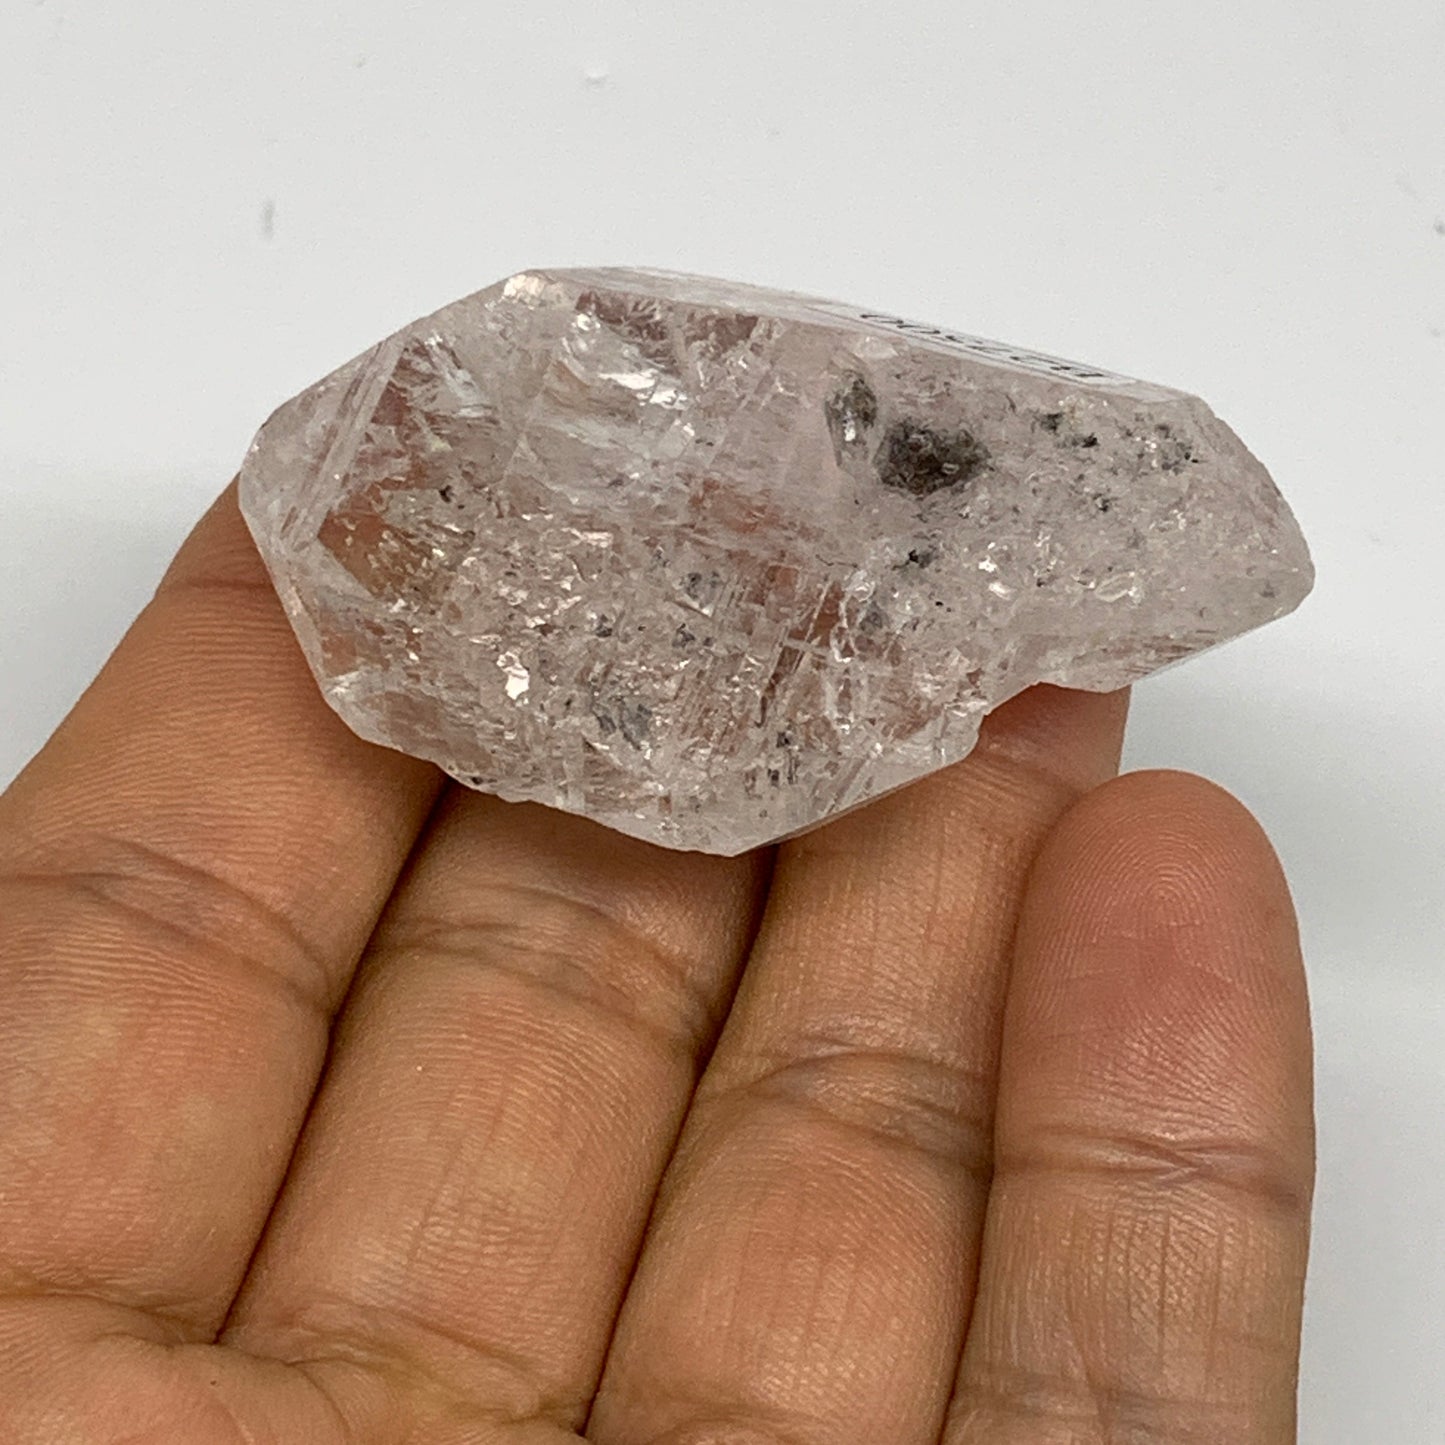 34.5g, 2"x1.2"x0.8", Natural Window Quartz Crystal Terminated @Pakistan,B27500